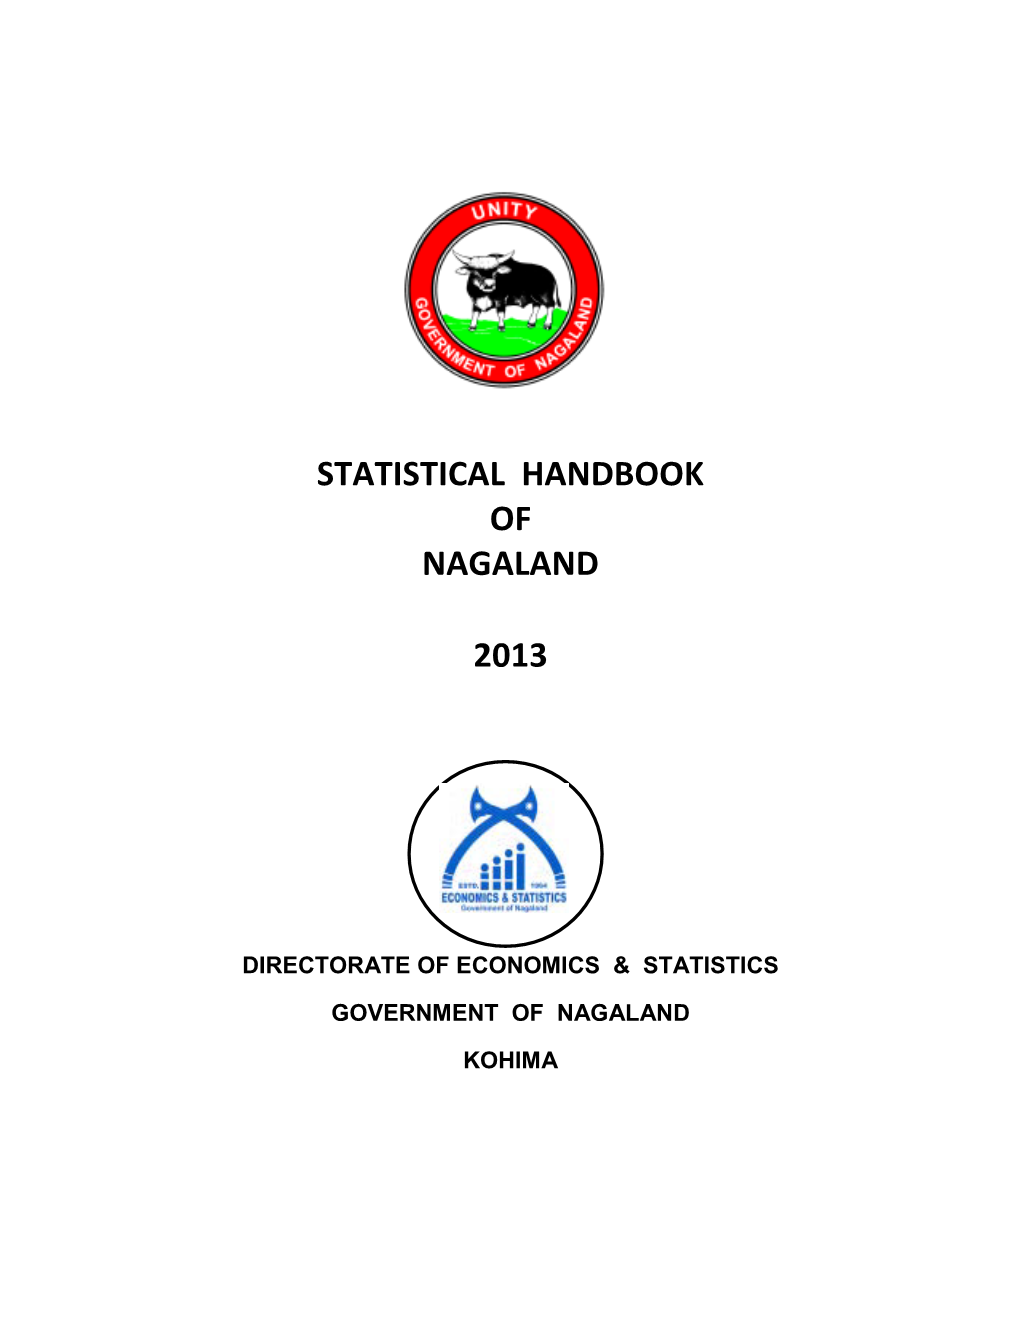 Statistical Handbook of Nagaland 2013